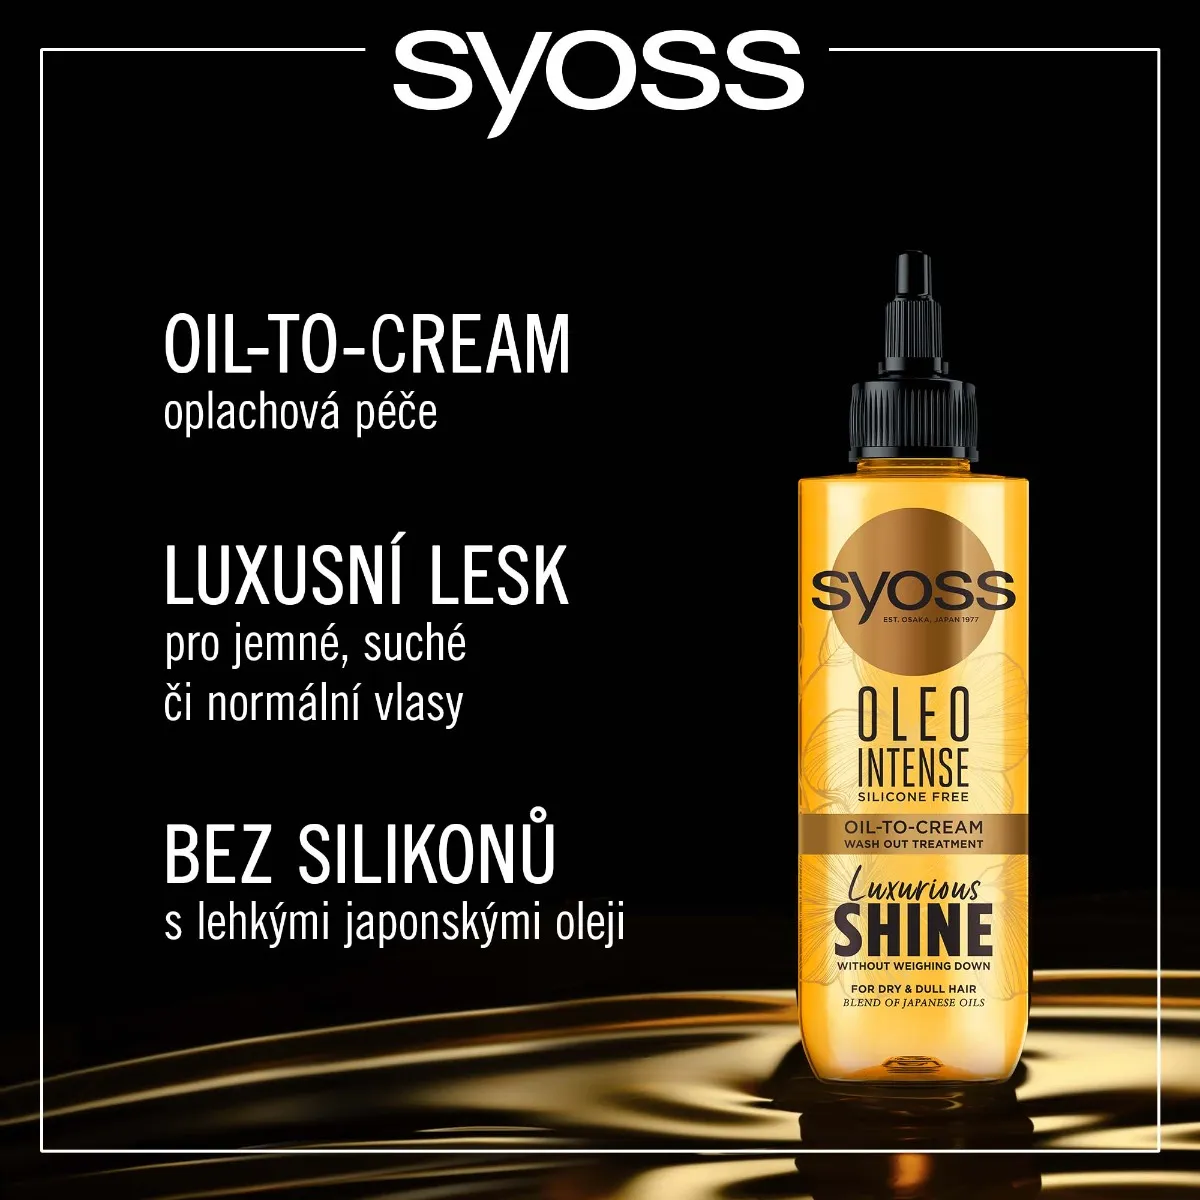 Syoss Oleo Intense Oil-To-Cream oplachová péče 200 ml